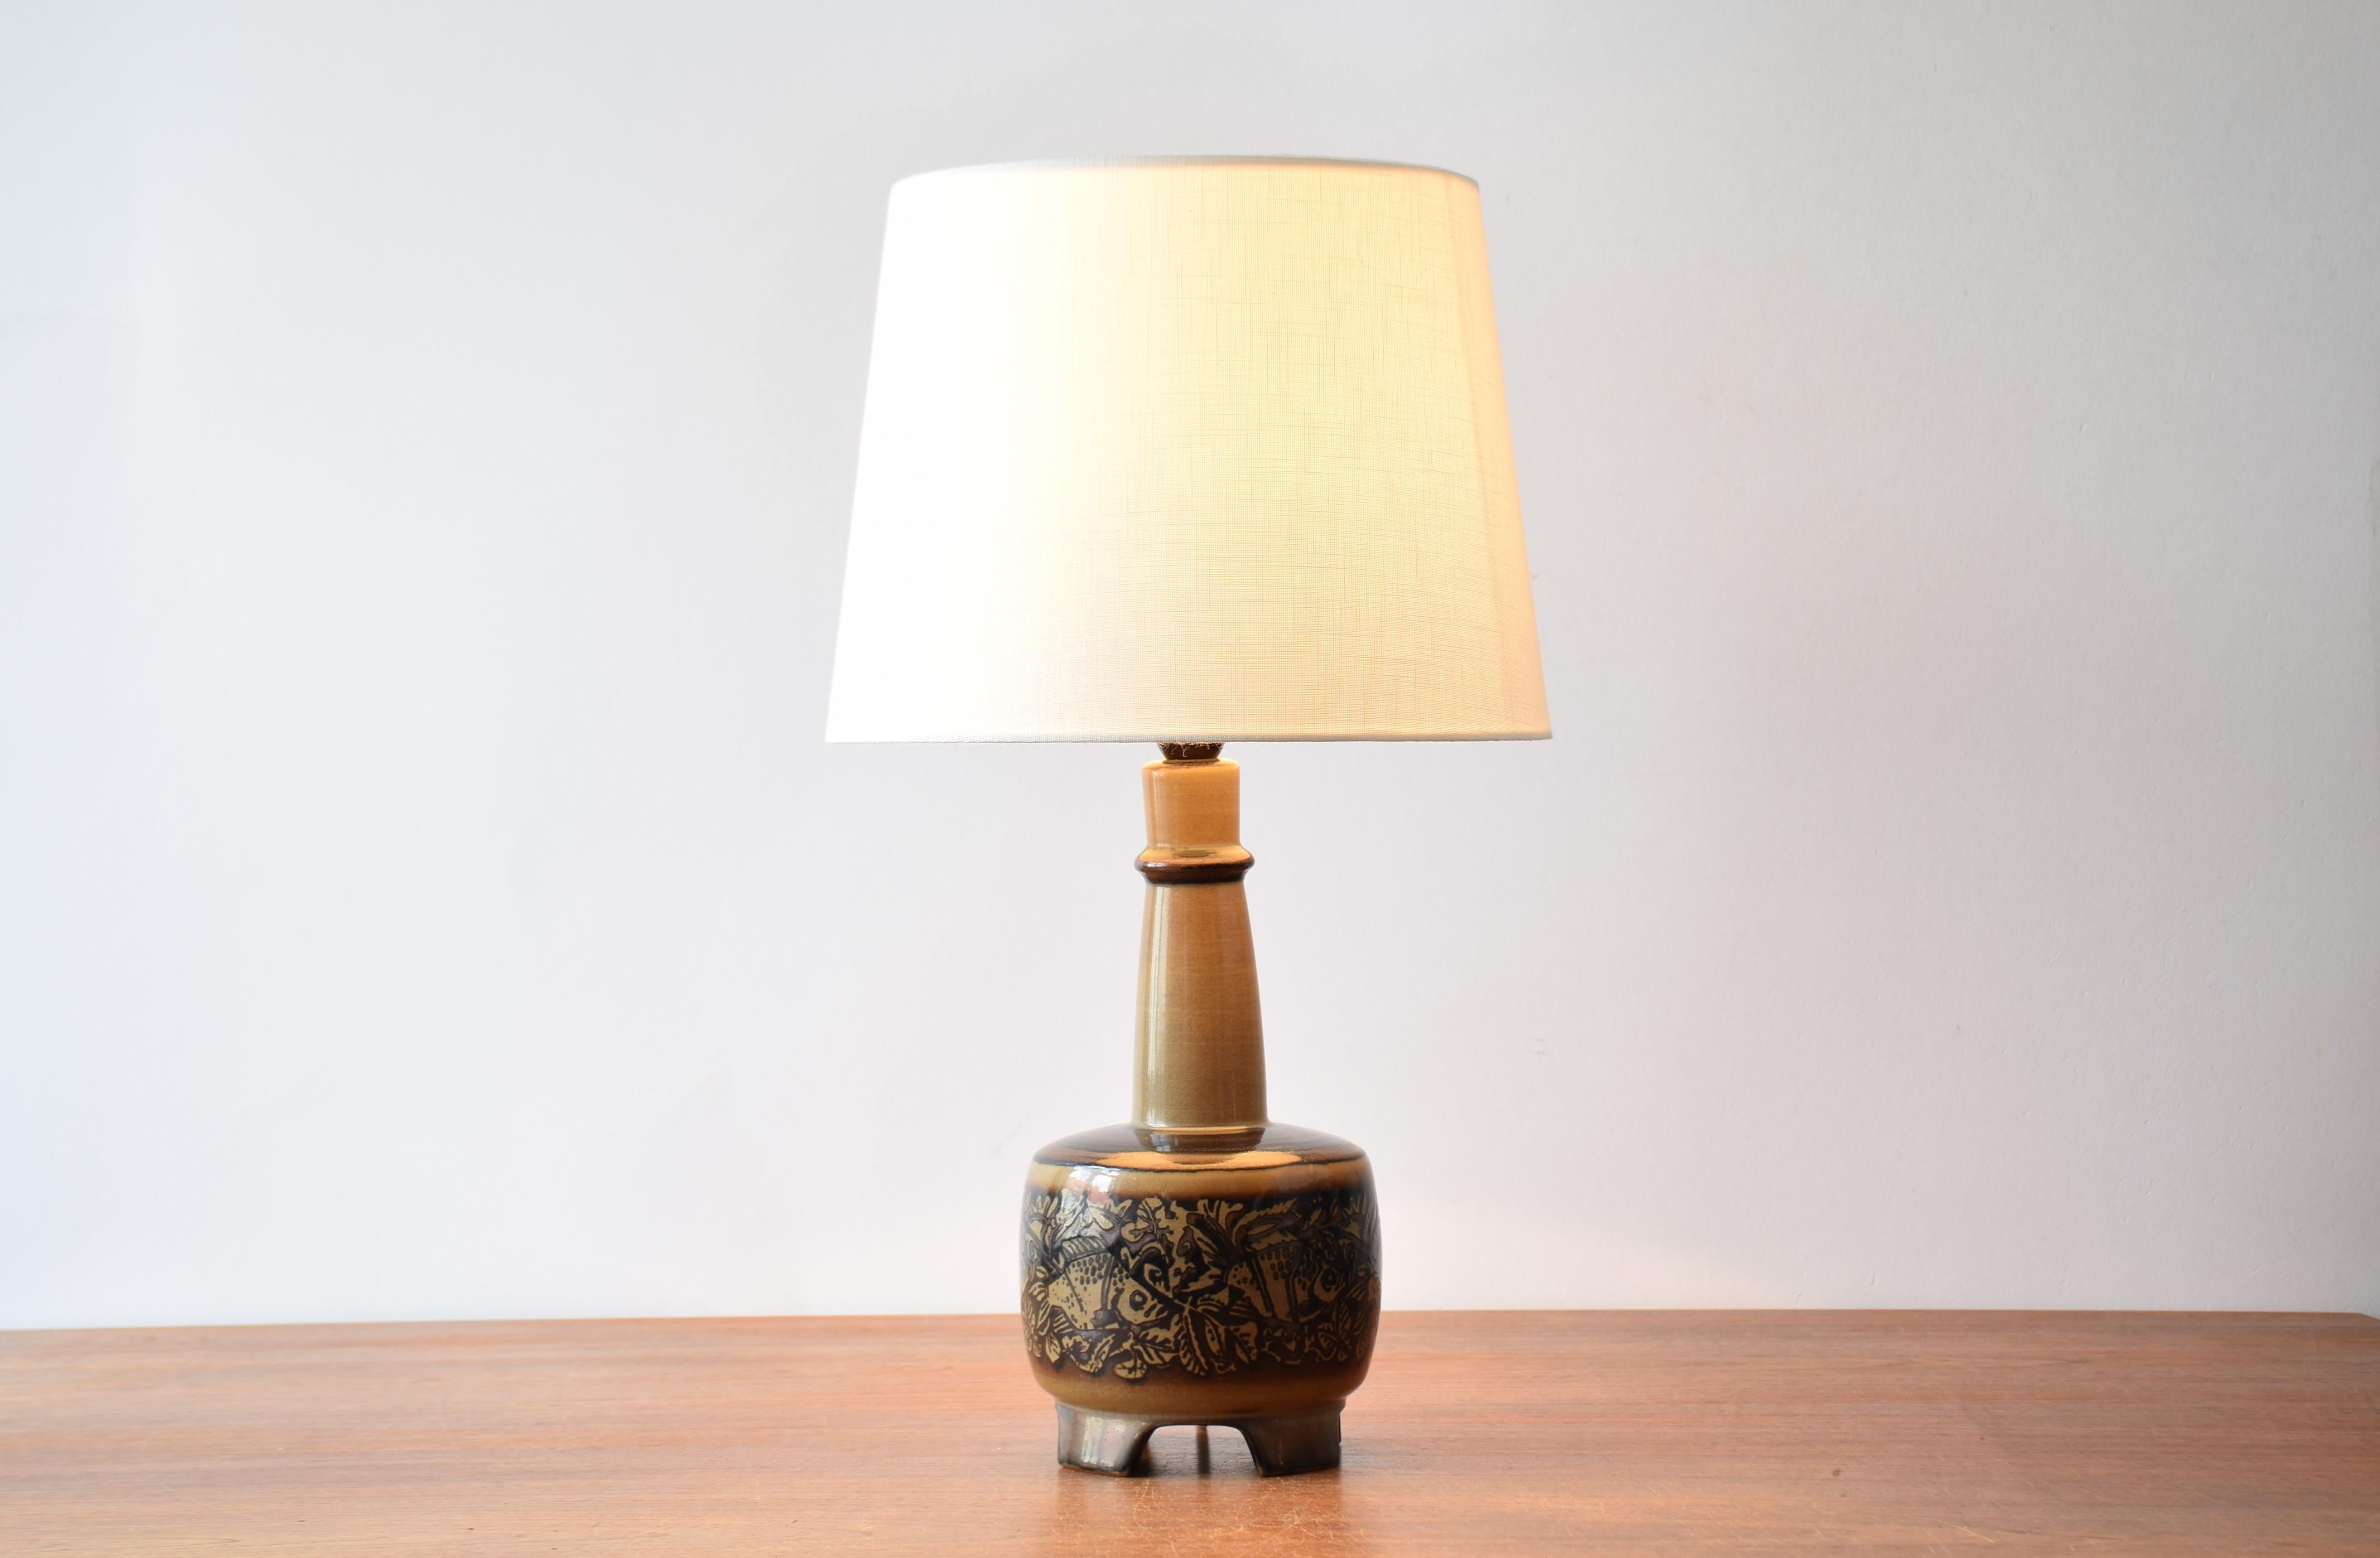 Lampe de table danoise vintage conçue par Nils Thorsson pour Royal Copenhagen en coopération avec Fog & Mørup.
La lampe présente un motif de poisson autour de la base.

Fabriqué vers les années 1960 ou 1970.

La lampe porte à la fois le logo